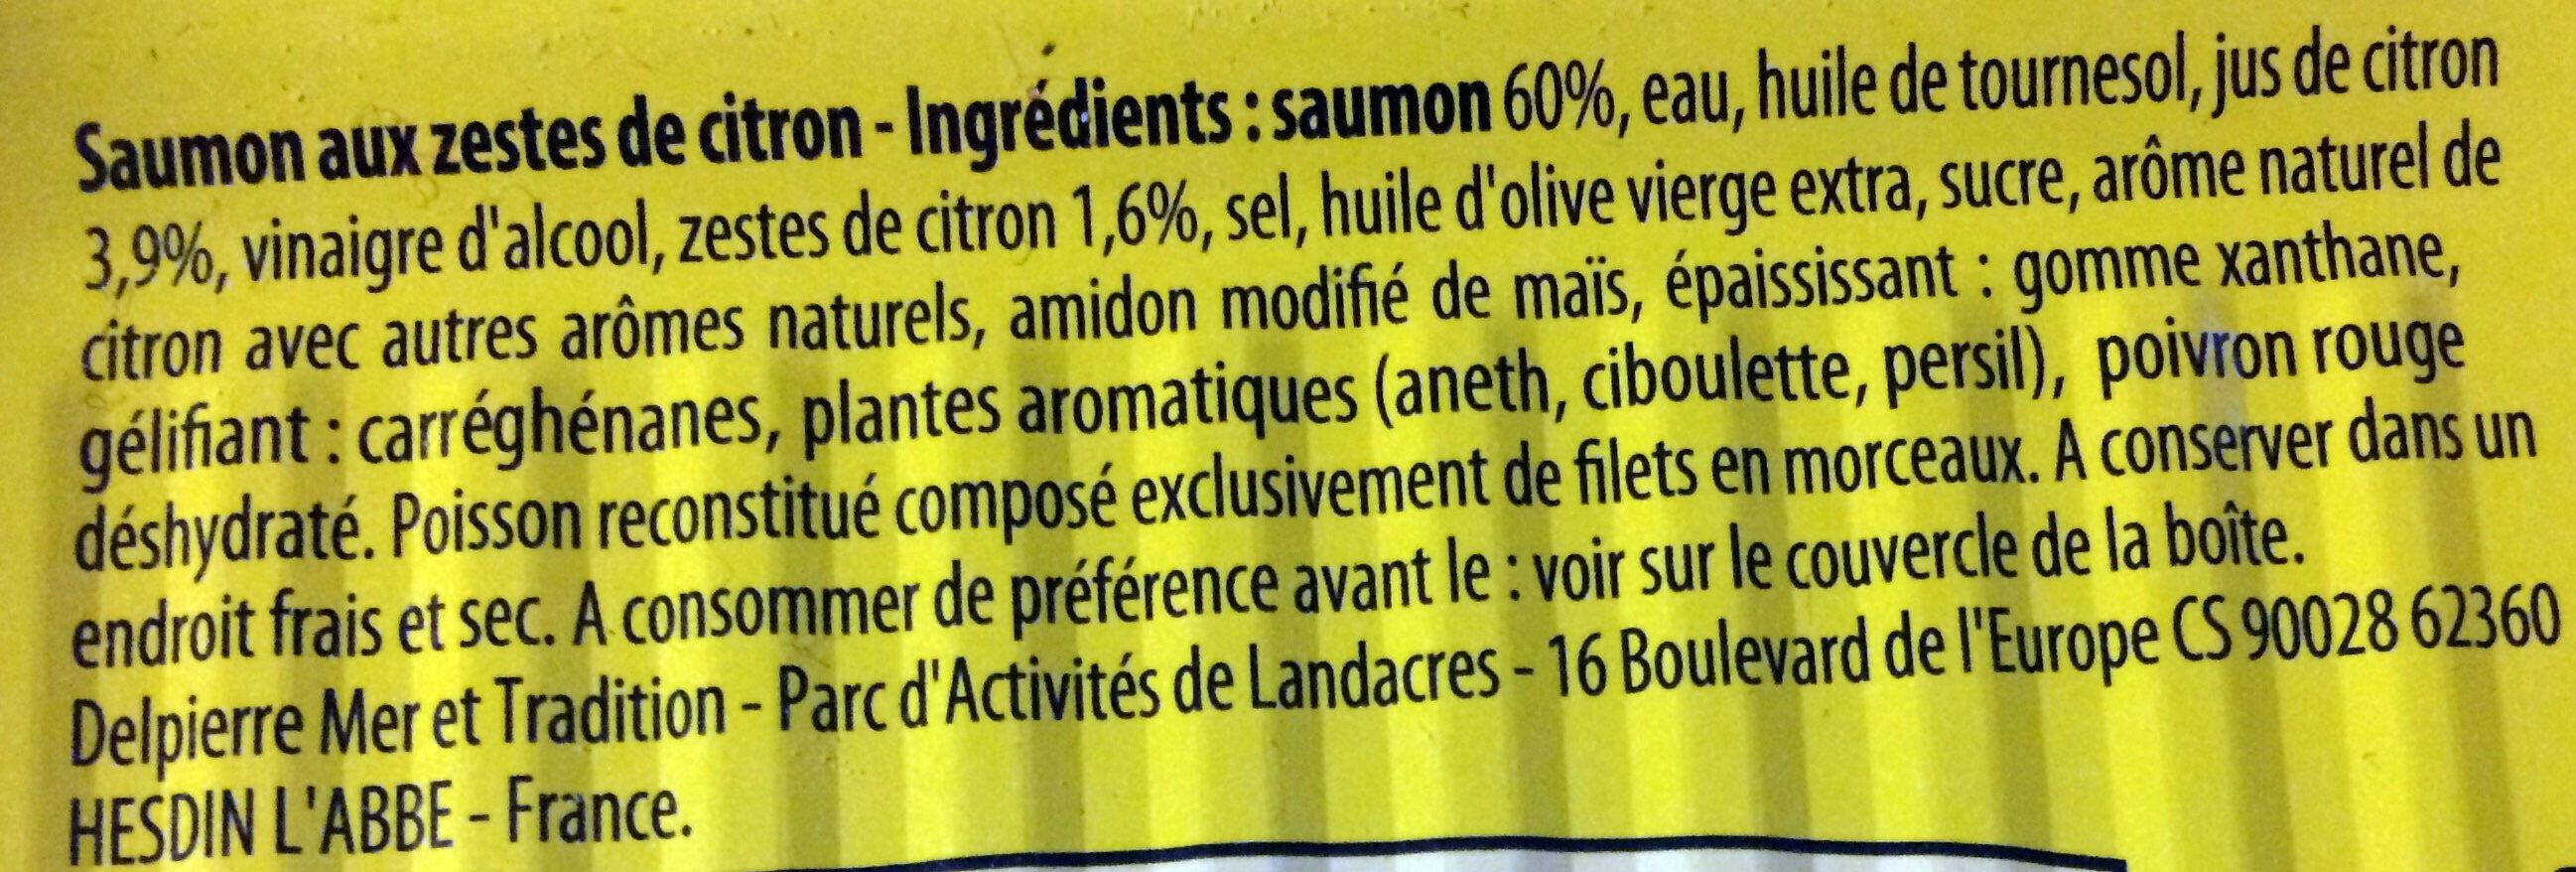 Filet Saumon sauce citron - Ingredients - fr